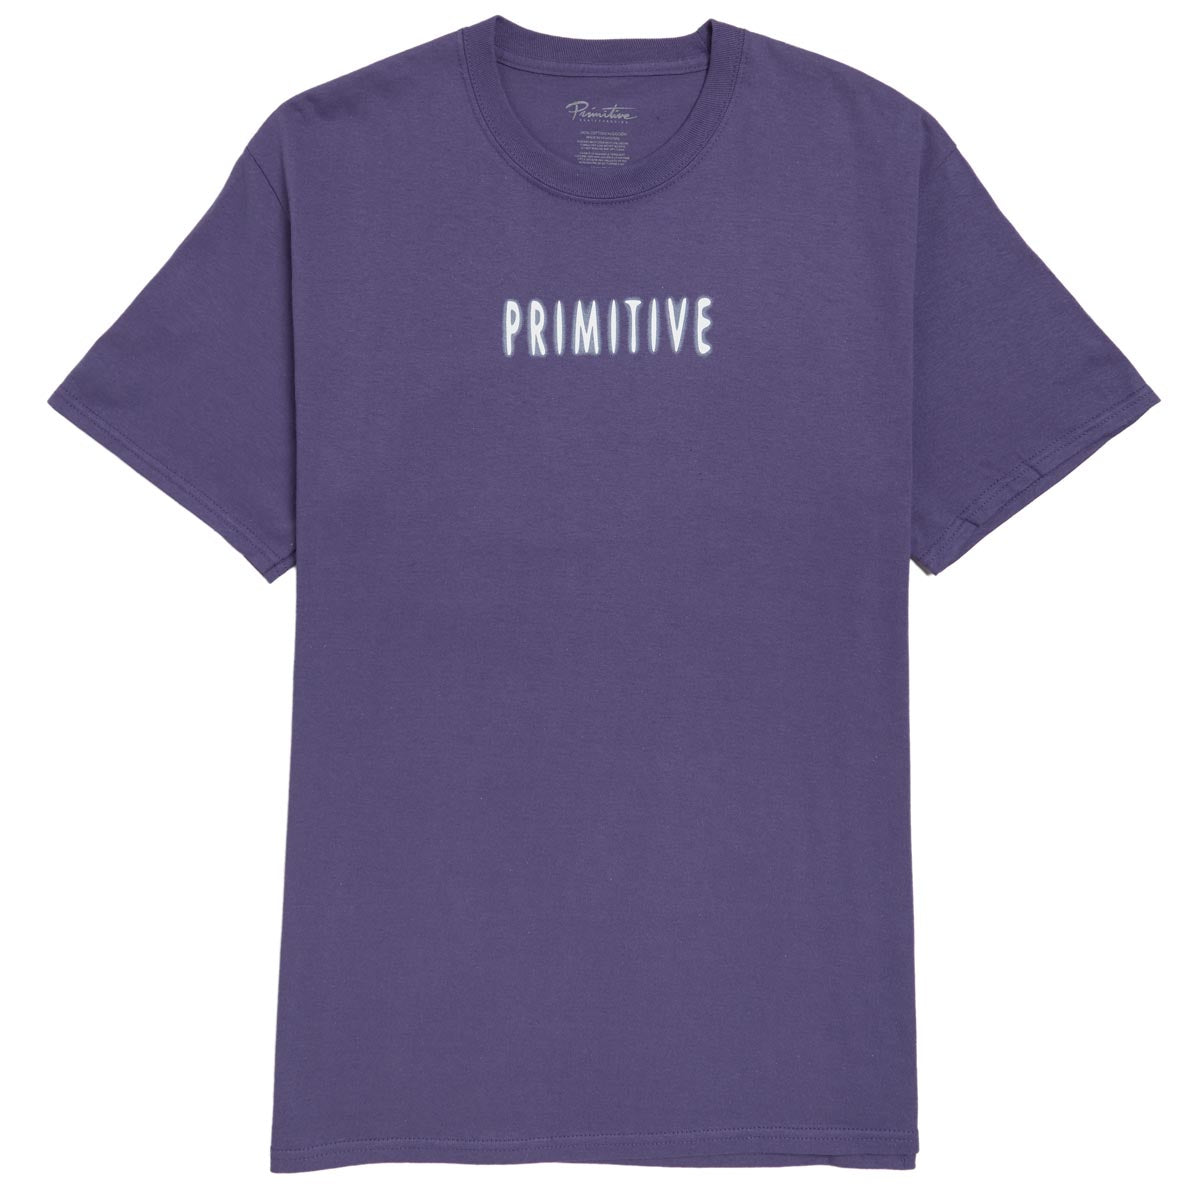 Primitive Contact T-Shirt - Purple image 2